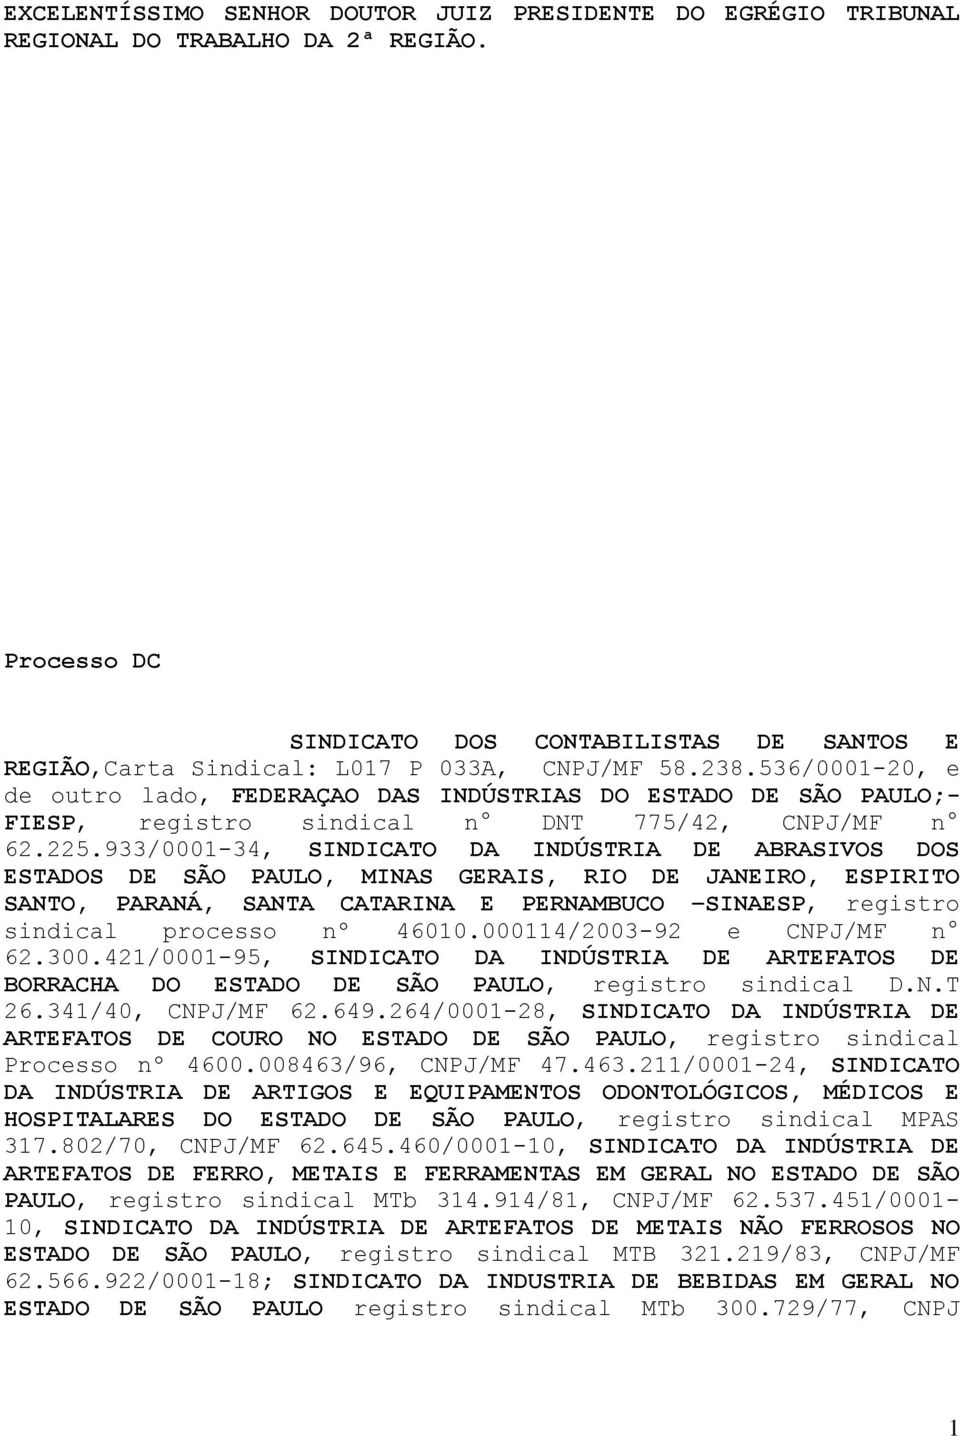 933/0001-34, SINDICATO DA INDÚSTRIA DE ABRASIVOS DOS ESTADOS DE SÃO PAULO, MINAS GERAIS, RIO DE JANEIRO, ESPIRITO SANTO, PARANÁ, SANTA CATARINA E PERNAMBUCO SINAESP, registro sindical processo nº